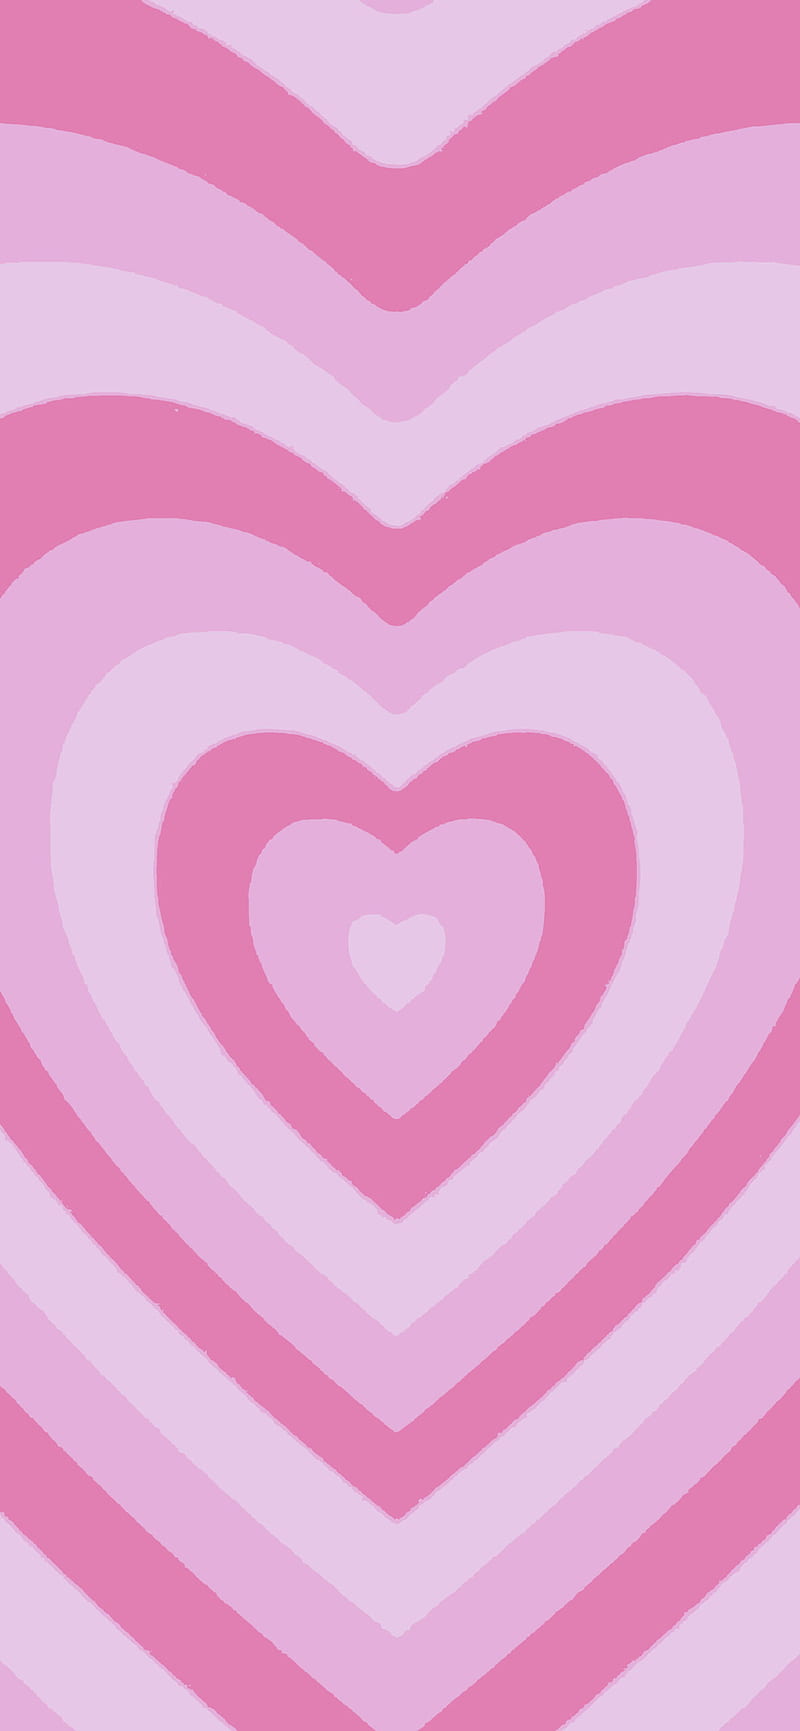 Bạn đang tìm kiếm một hình nền độc đáo và đẹp mắt? Hãy cùng xem hình nền hình trái tim màu hồng đẹp để tạo nên một không gian làm việc hoàn hảo.